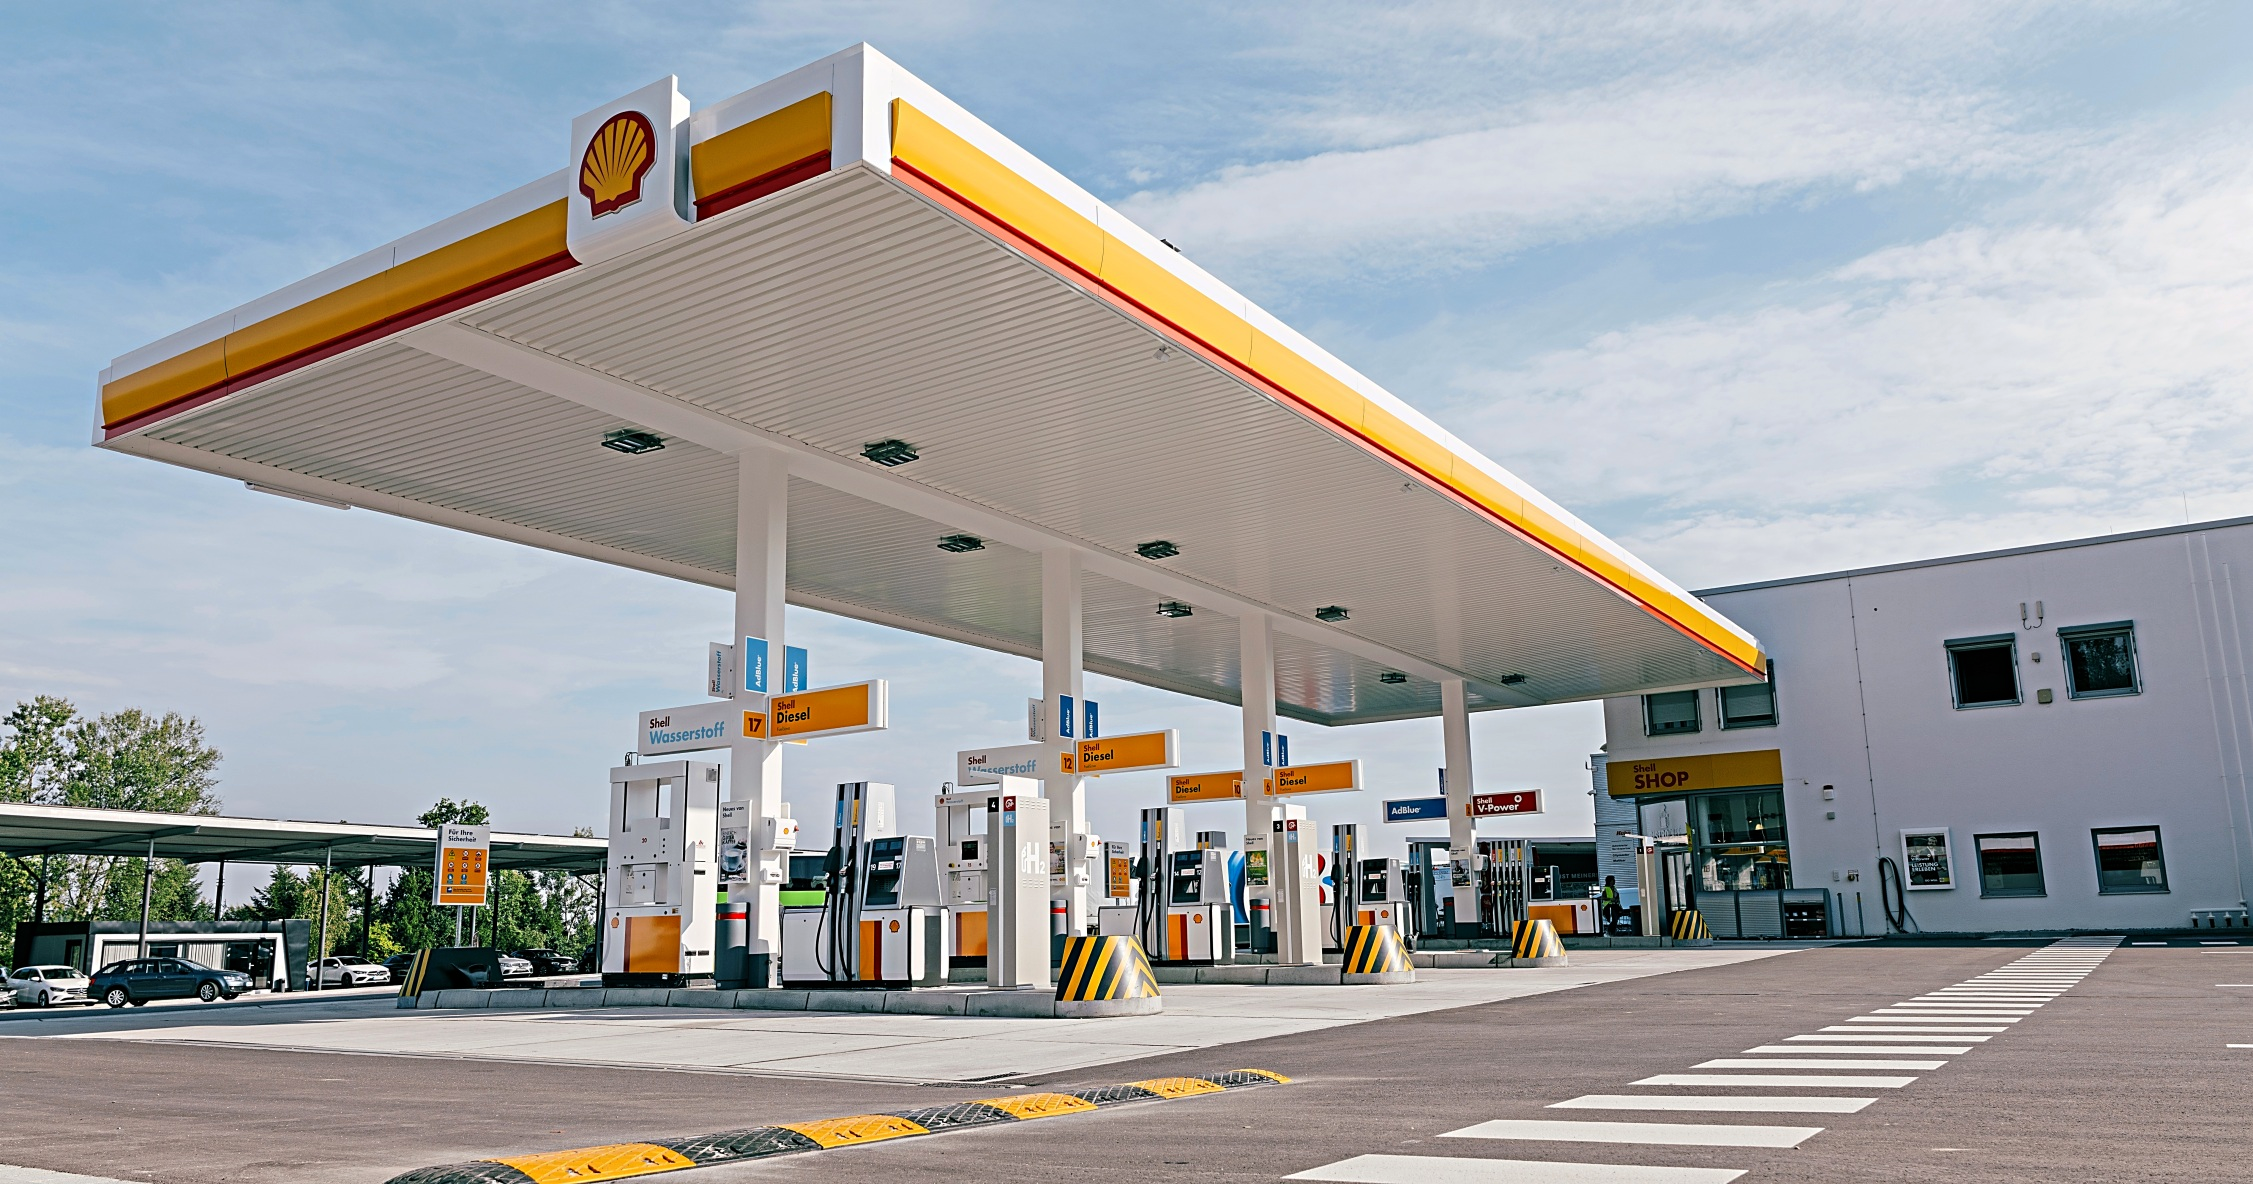 Tankstelle für konventionelle Kraftstoffe und Ad Blue für Pkw und Lkw, sowie Wasserstoff für Lkws